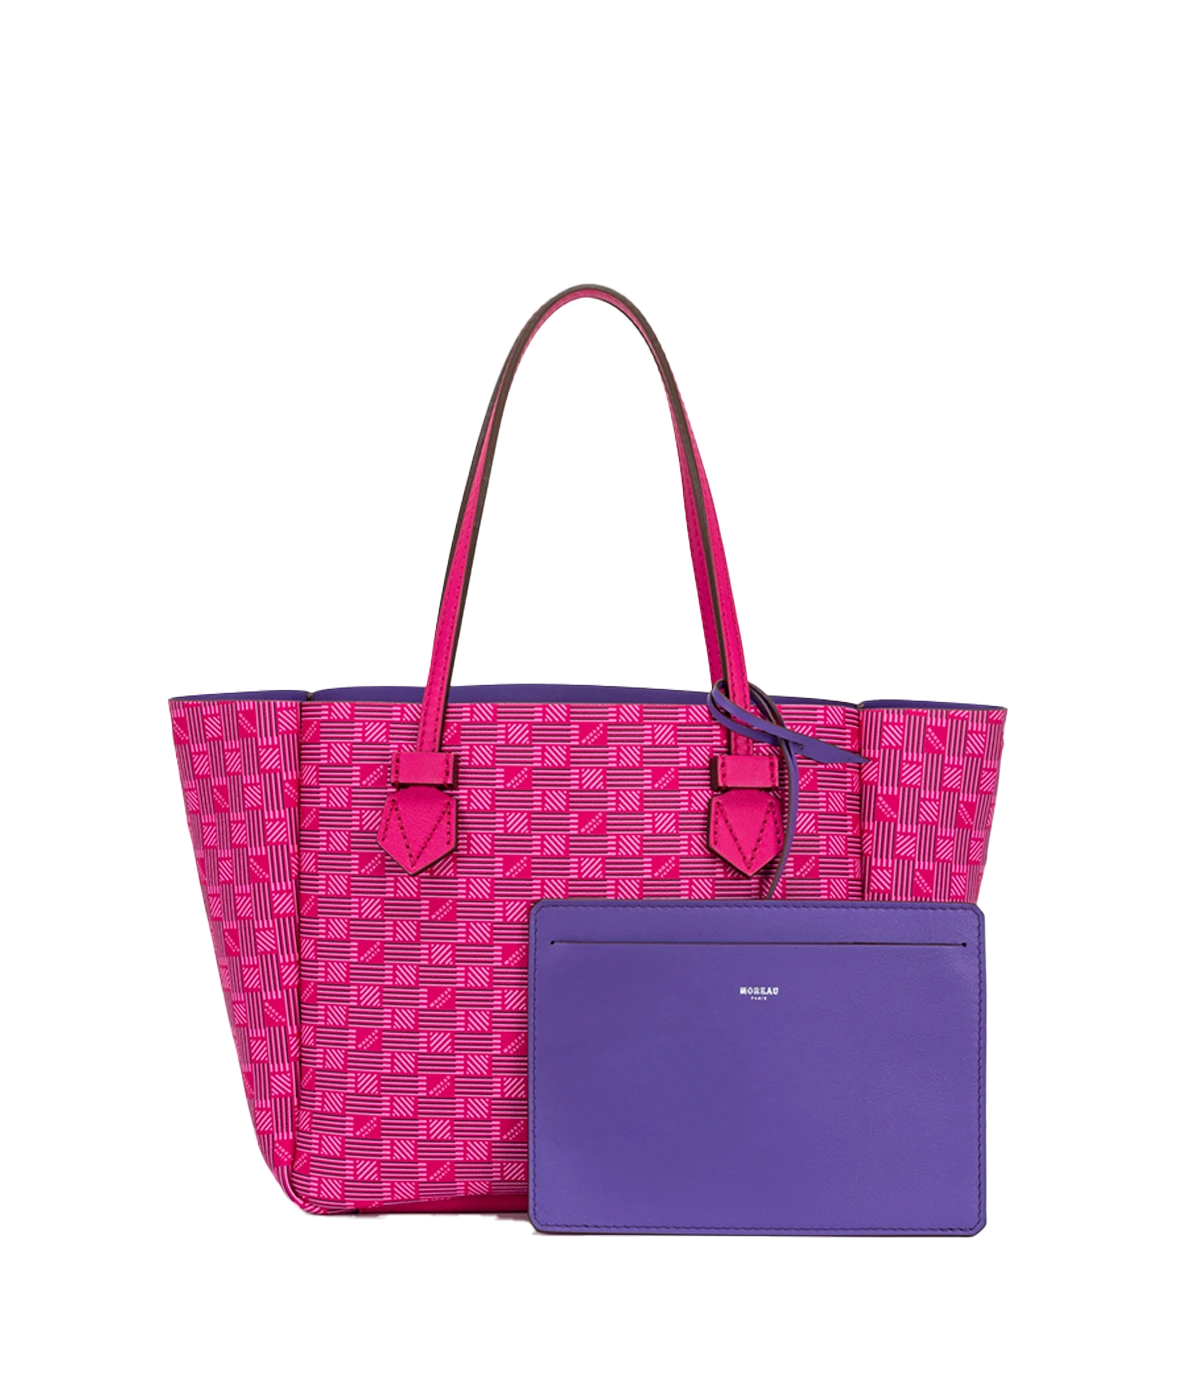 Vincennes Bag in Fuchsia & Purple